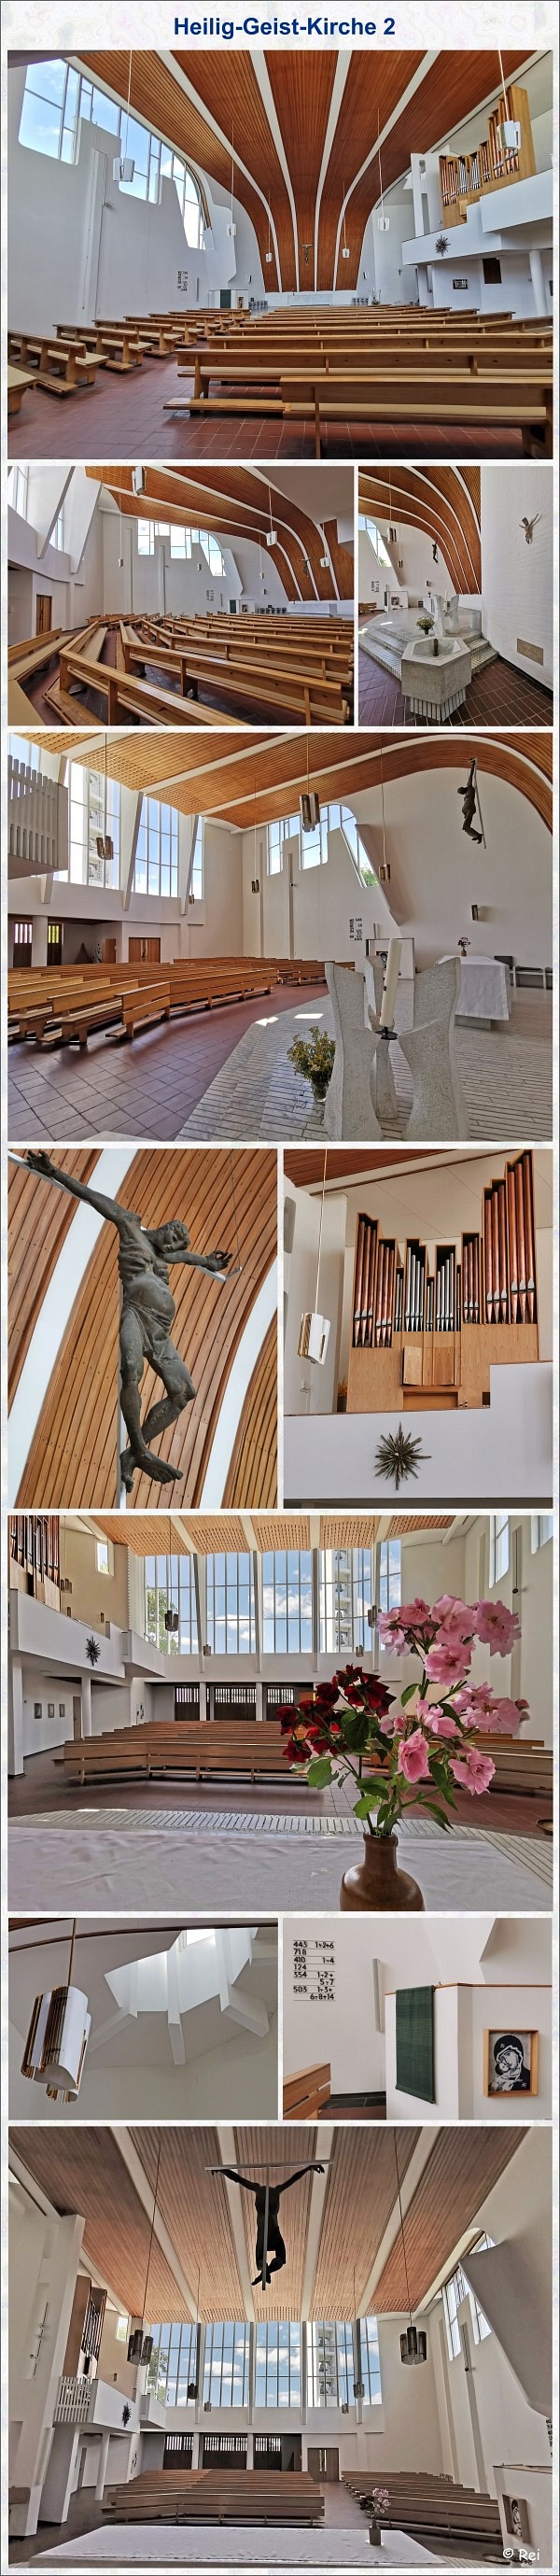 Heilig-Geist-Kirche_2 in Wolfsburg